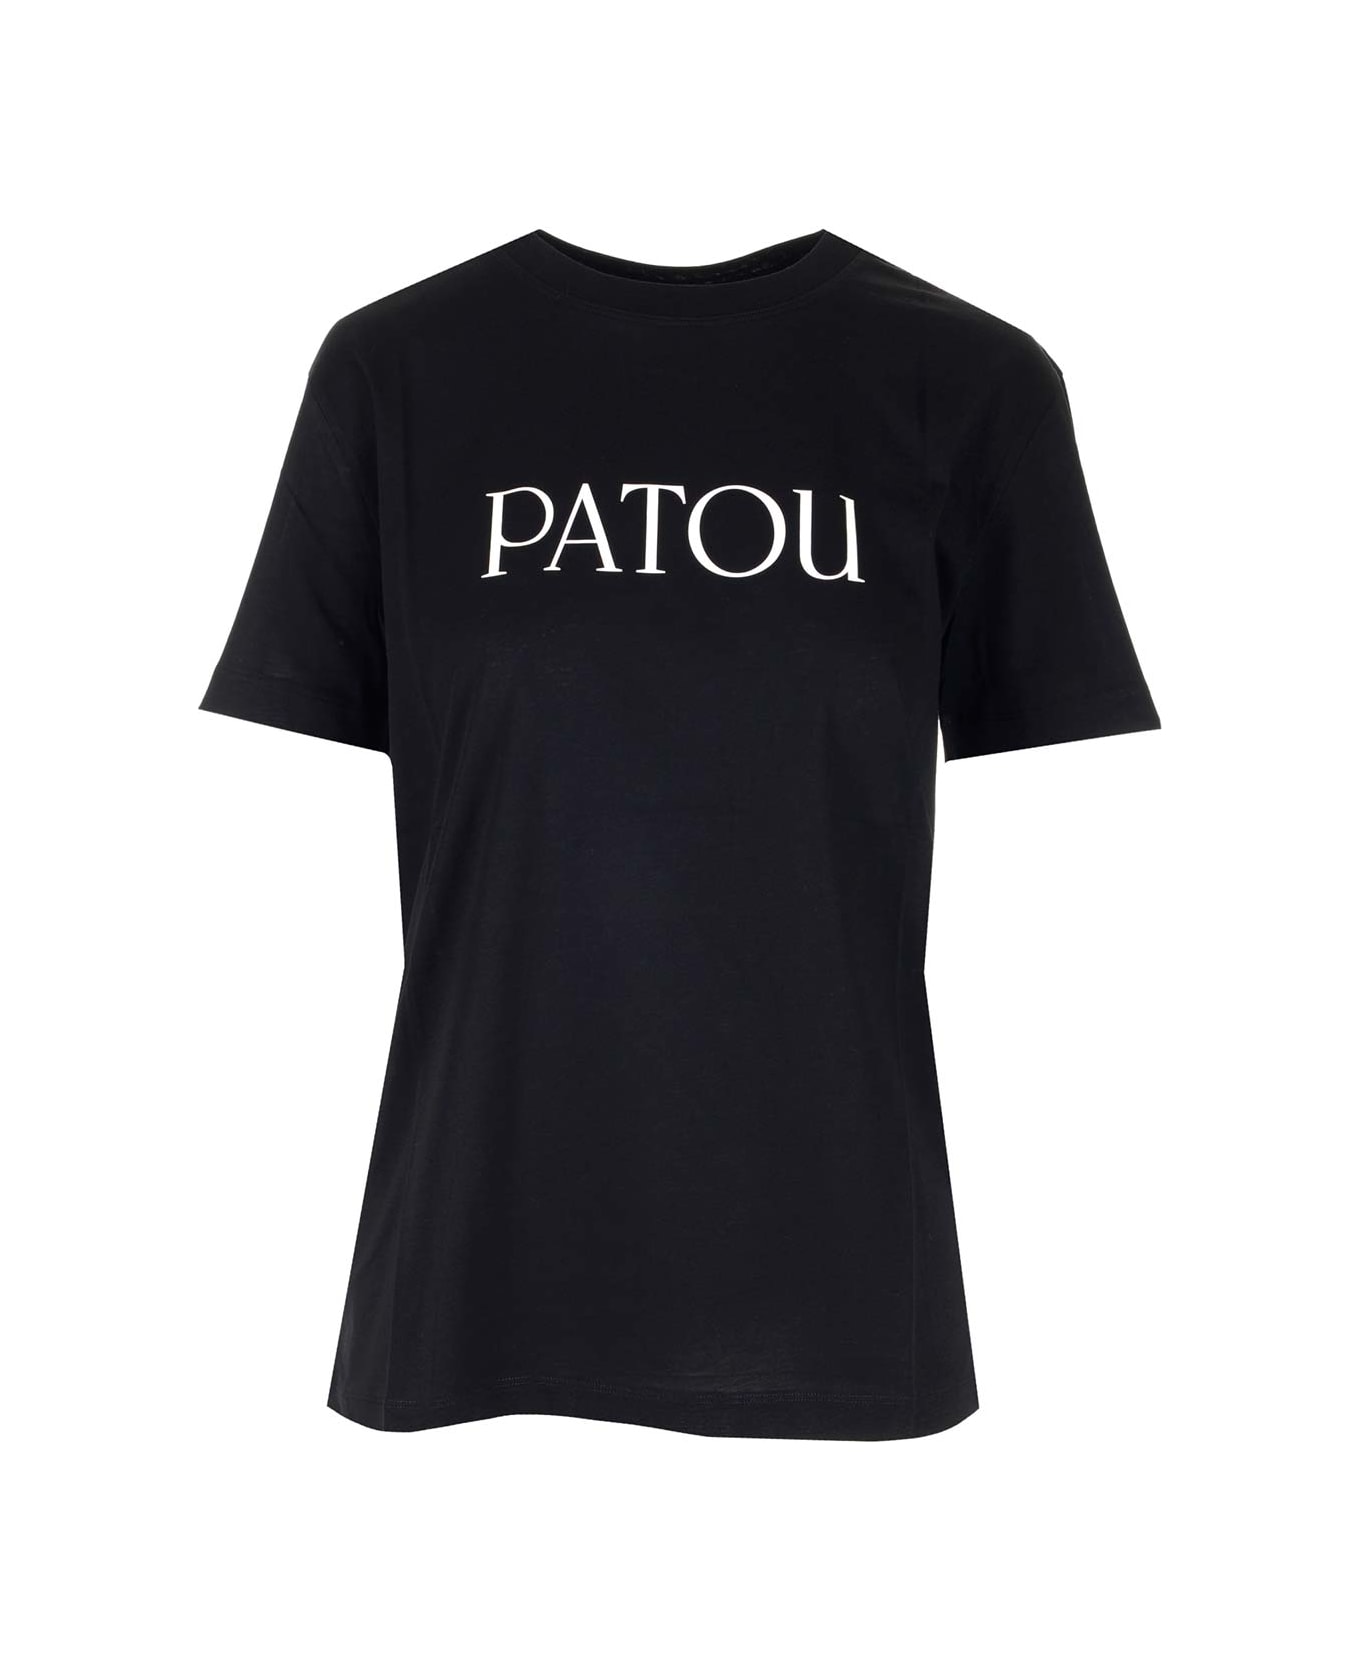 Patou Black T-shirt With White Logo - Nero